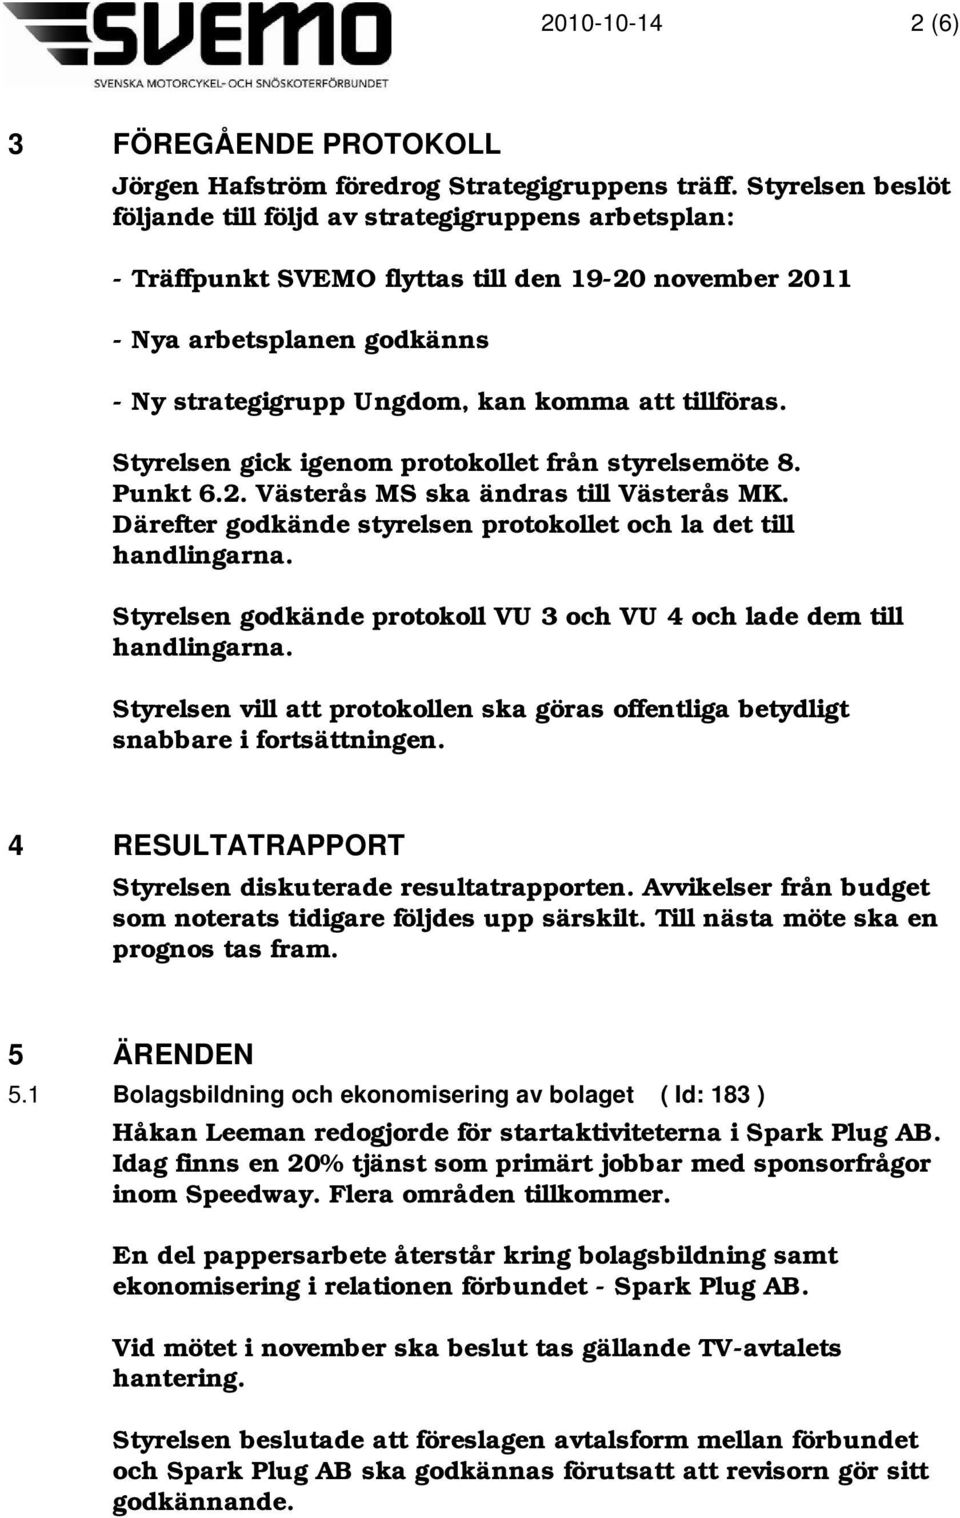 tillföras. Styrelsen gick igenom protokollet från styrelsemöte 8. Punkt 6.2. Västerås MS ska ändras till Västerås MK. Därefter godkände styrelsen protokollet och la det till handlingarna.